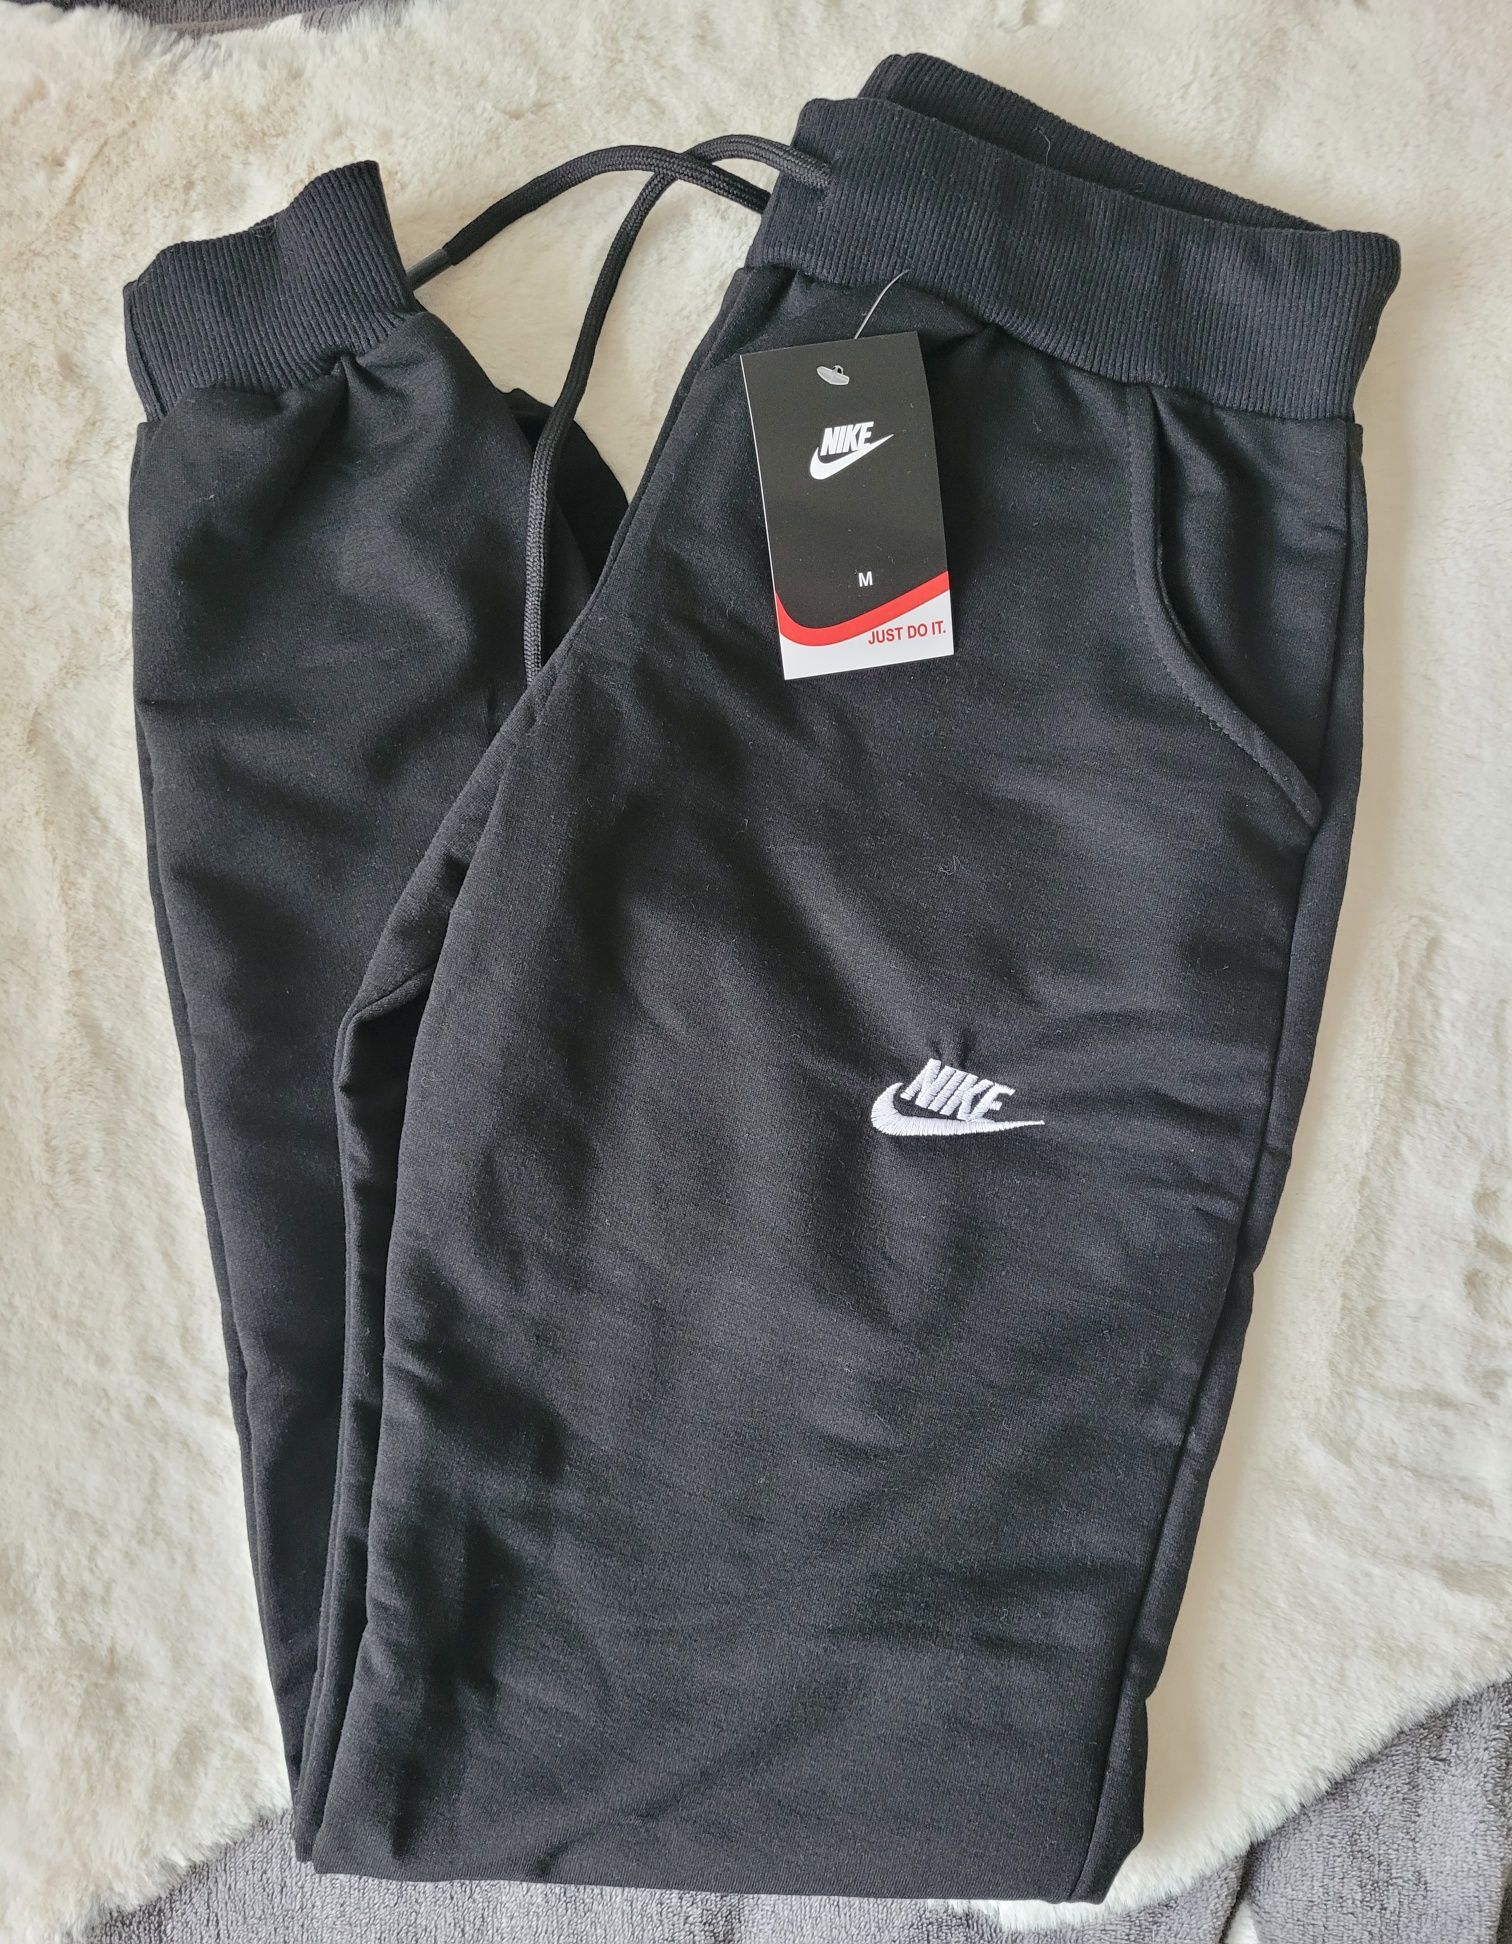 Spodnie dresowe damskie nieocieplane logo wyszywane Nike TH czarne sza